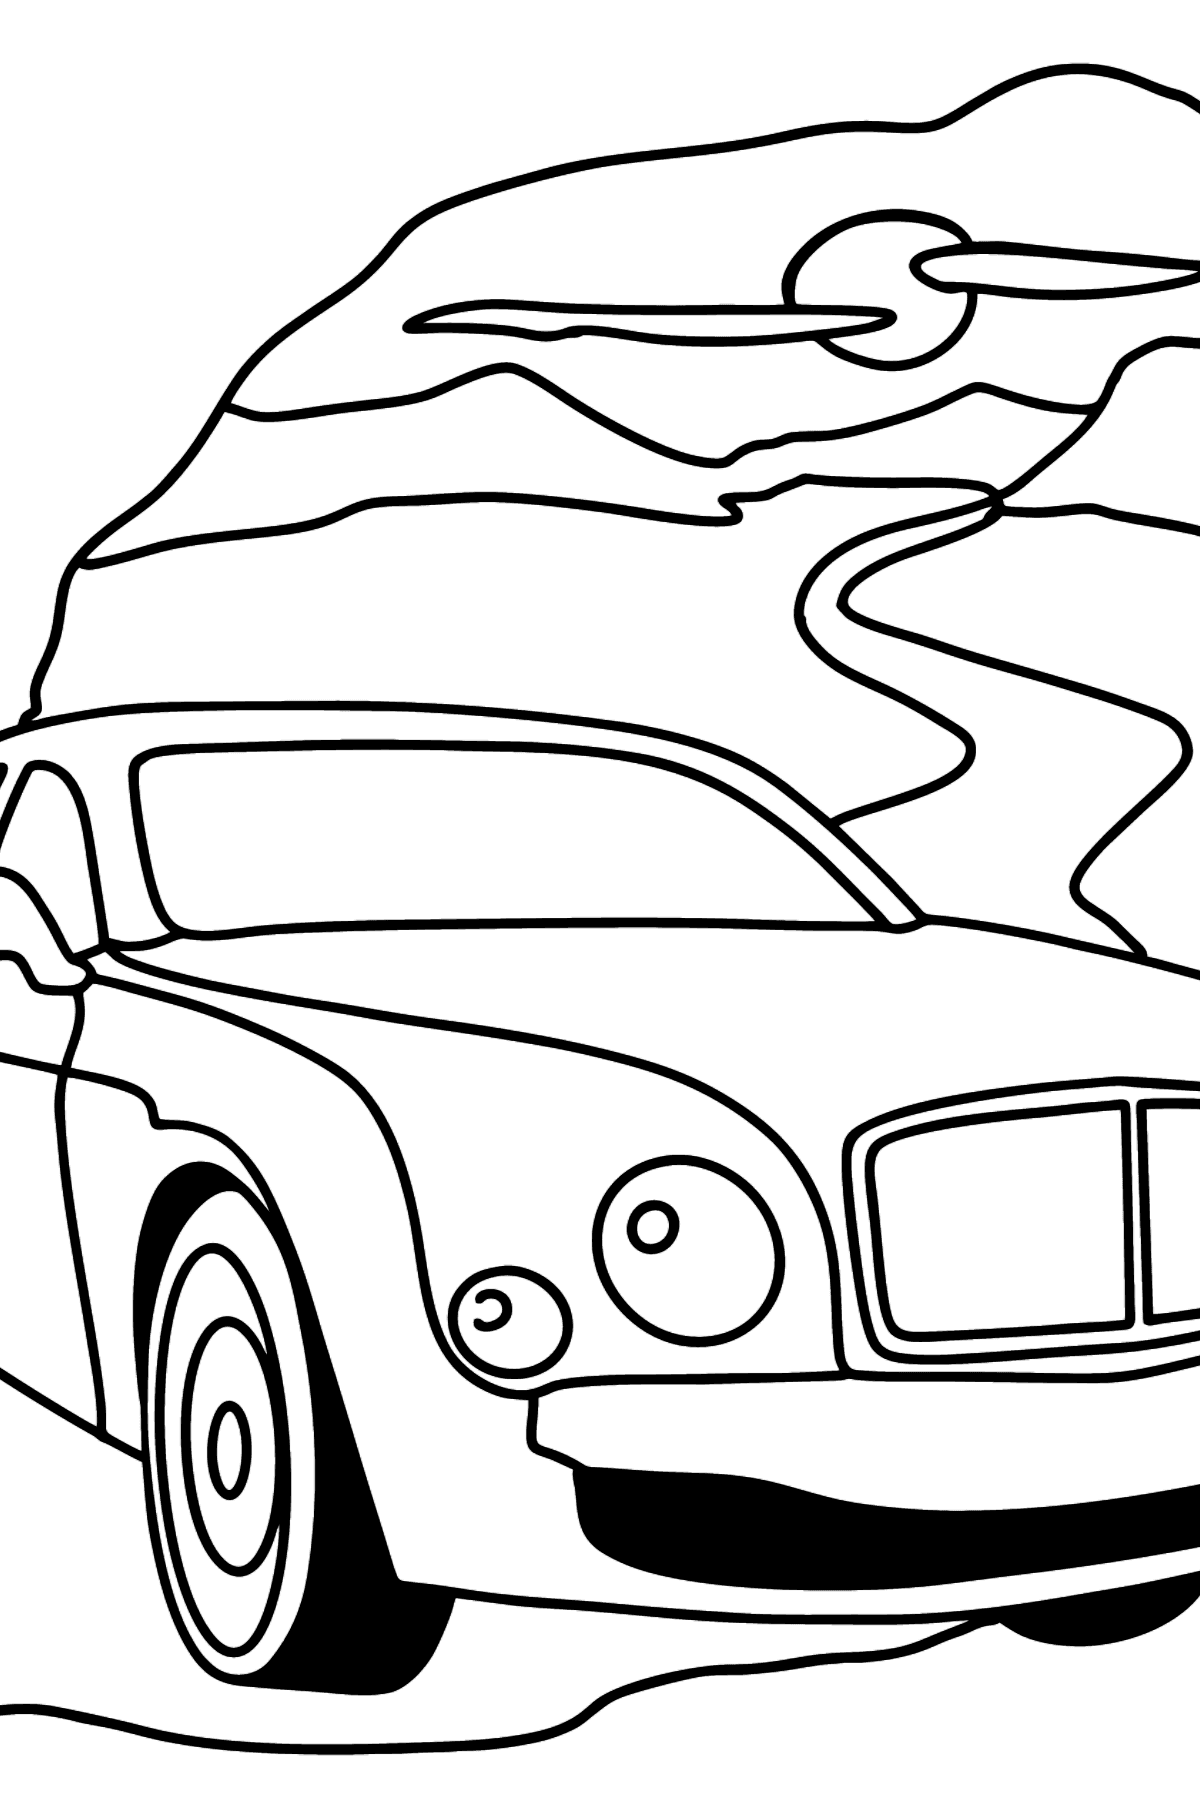 Tegning til fargelegging Bentley Mulsanne bil - Tegninger til fargelegging for barn